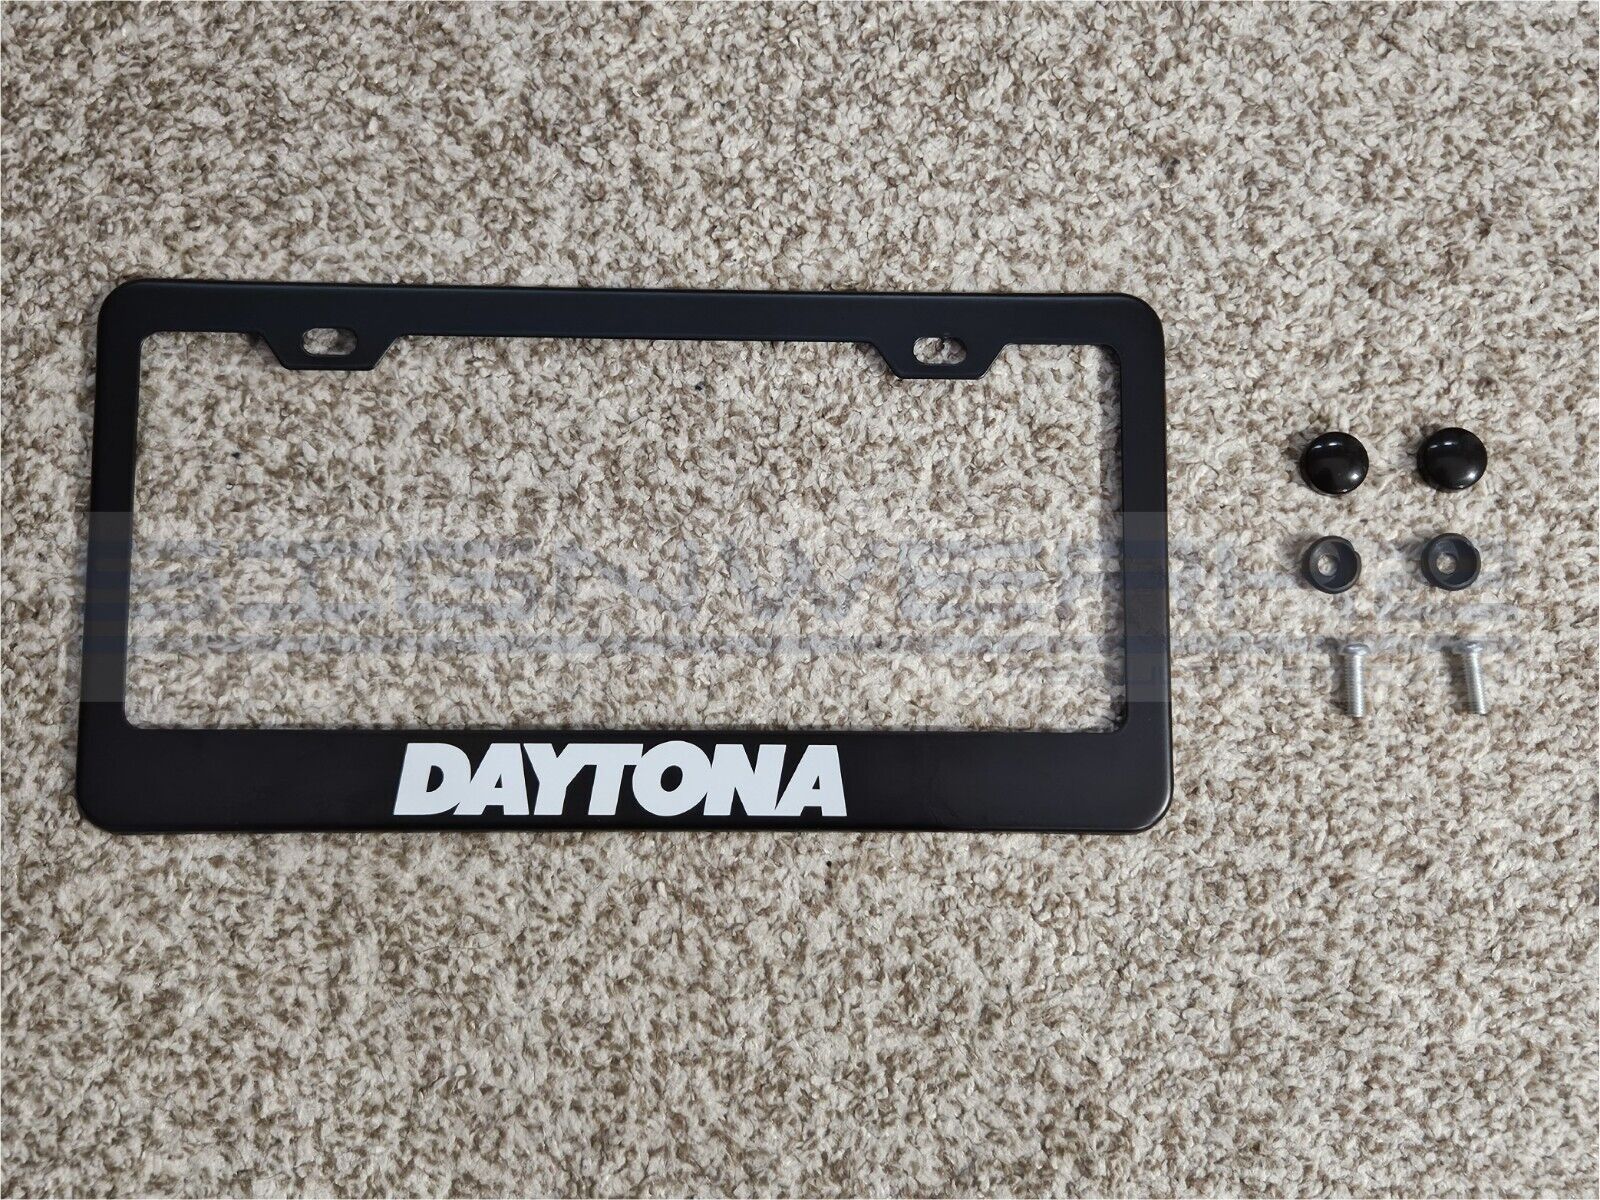 Daytona Black Stainless Steel License Plate Frame